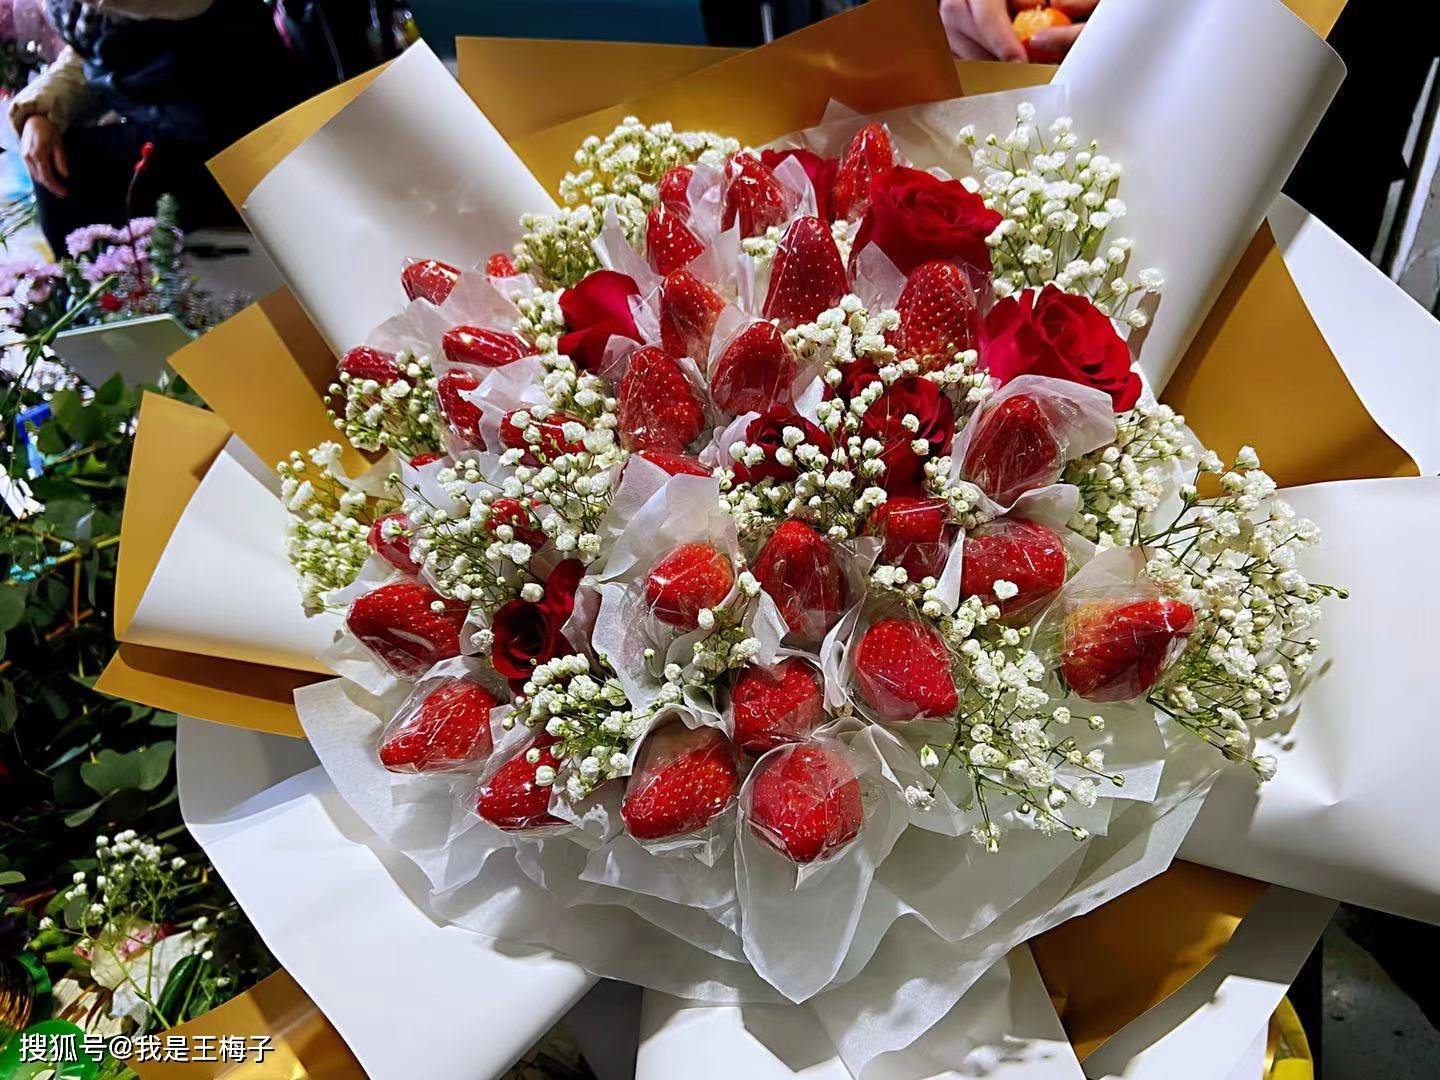 30元1斤草莓 经花店包装价格翻10倍 比玫瑰花还要贵 花束